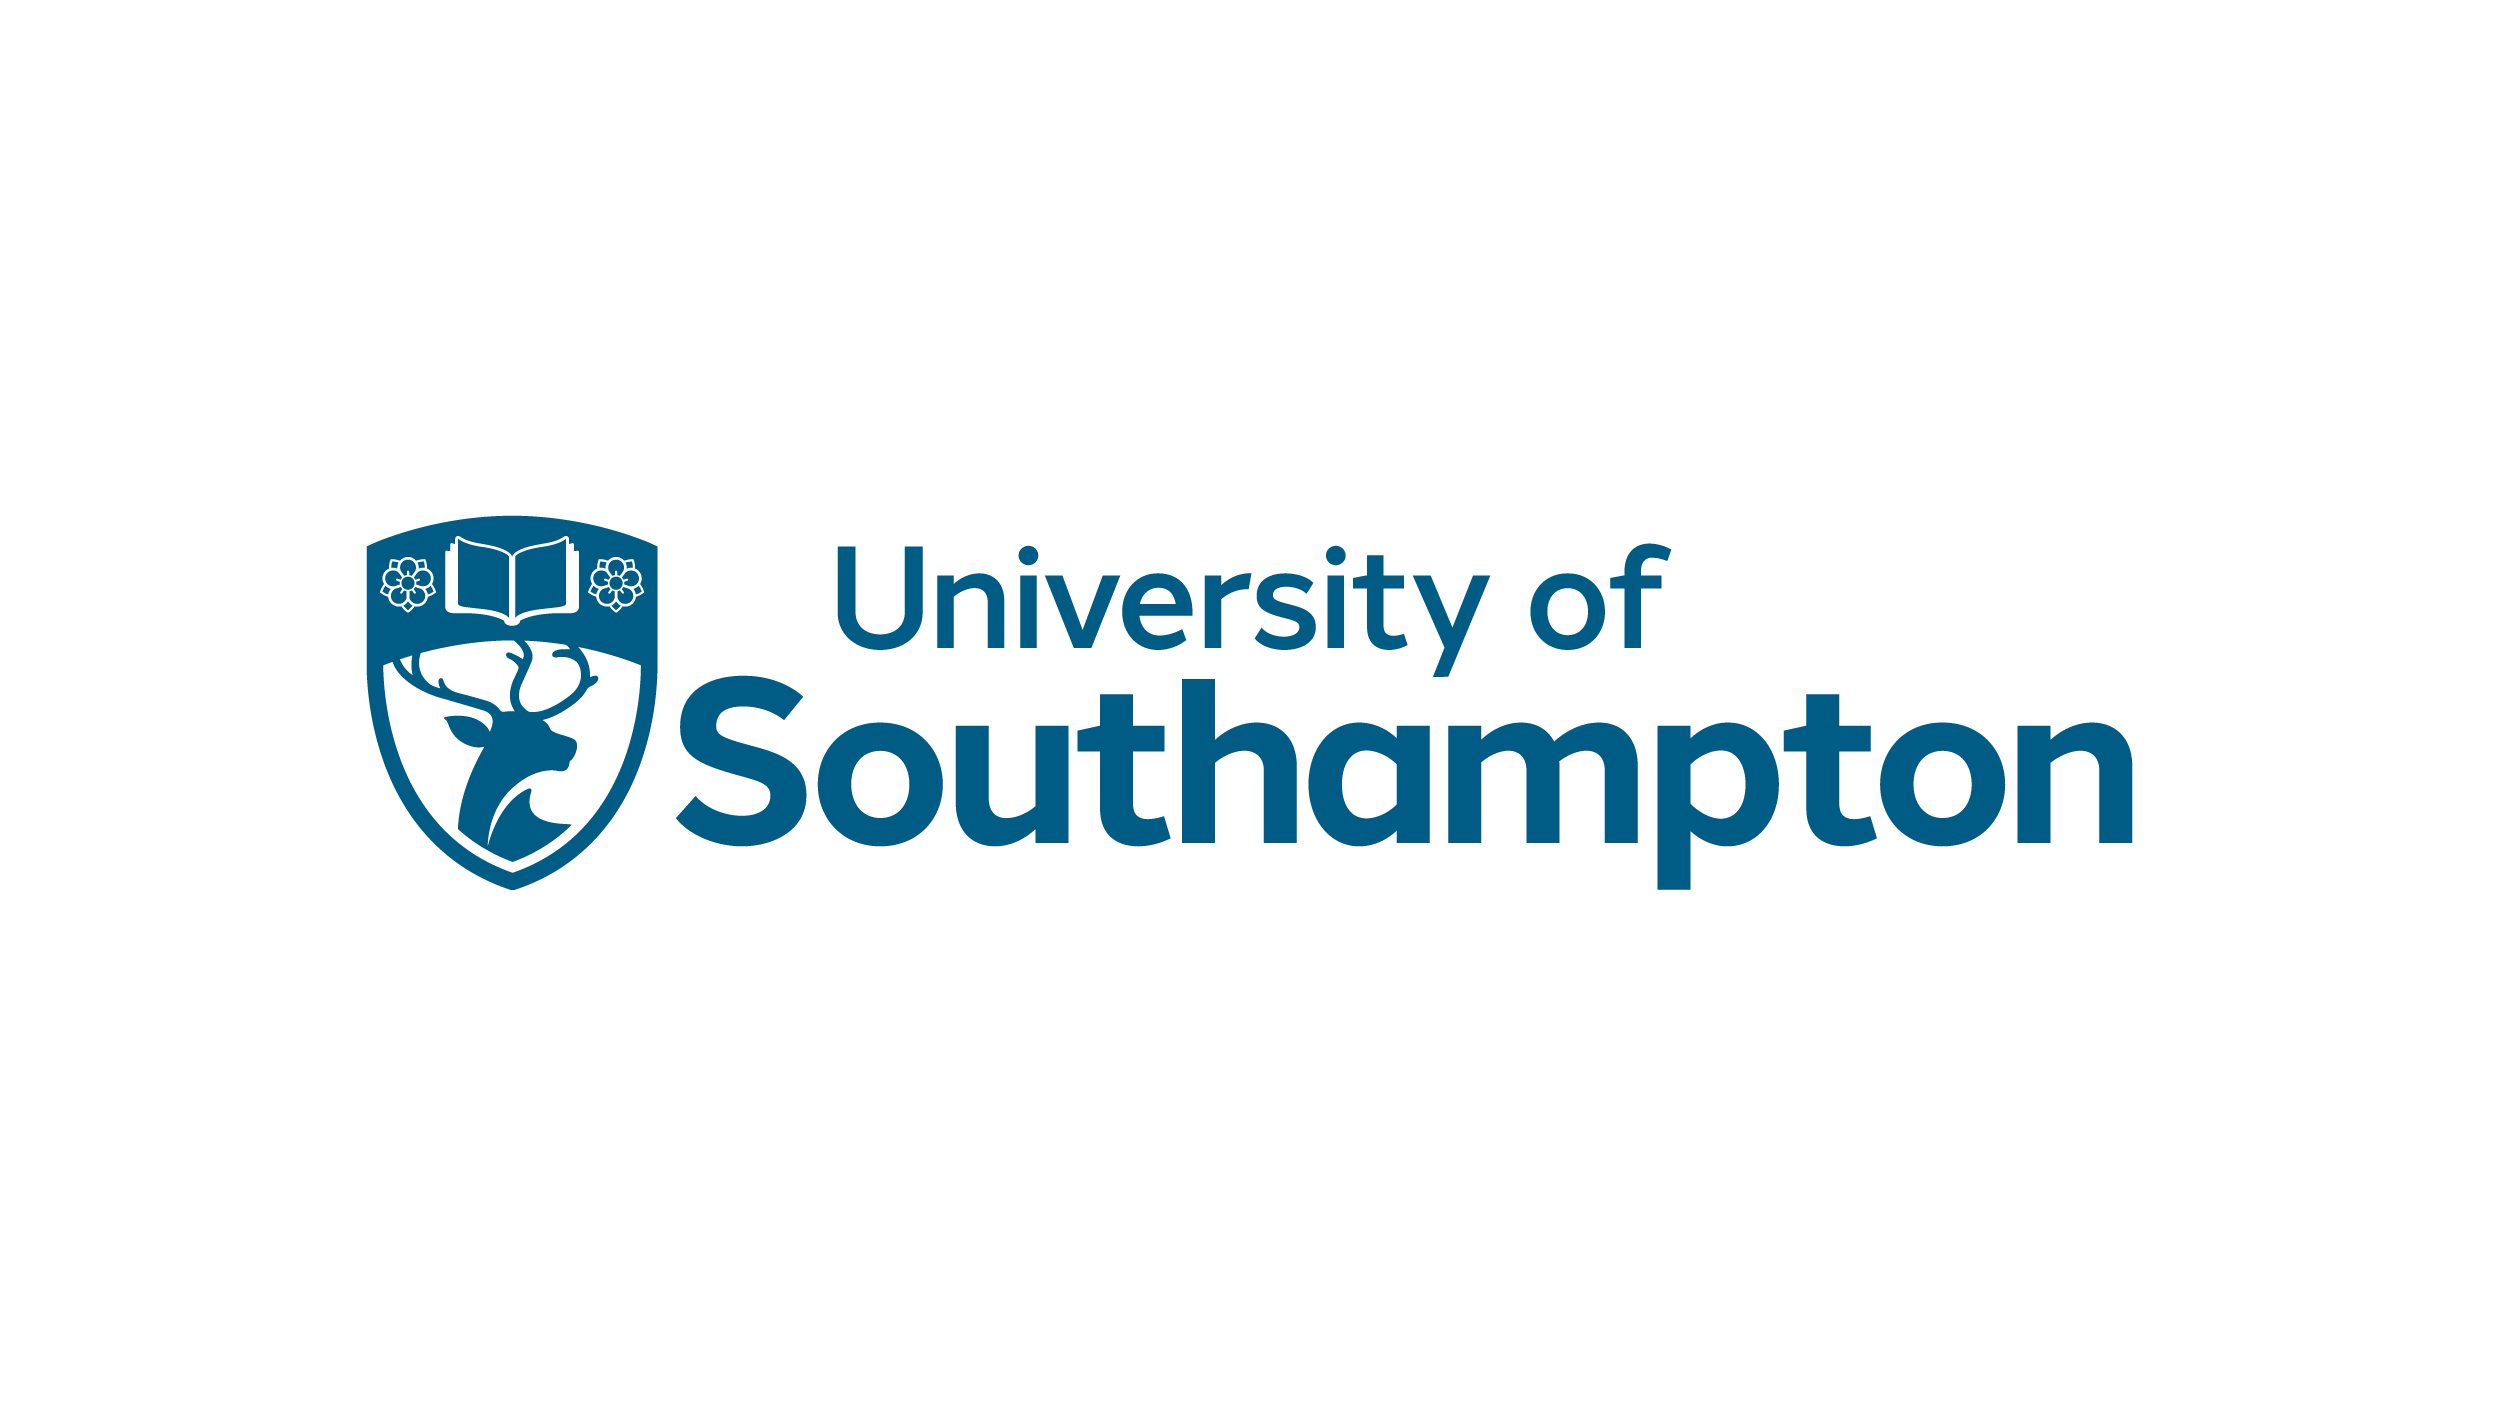 University of Southampton logo png